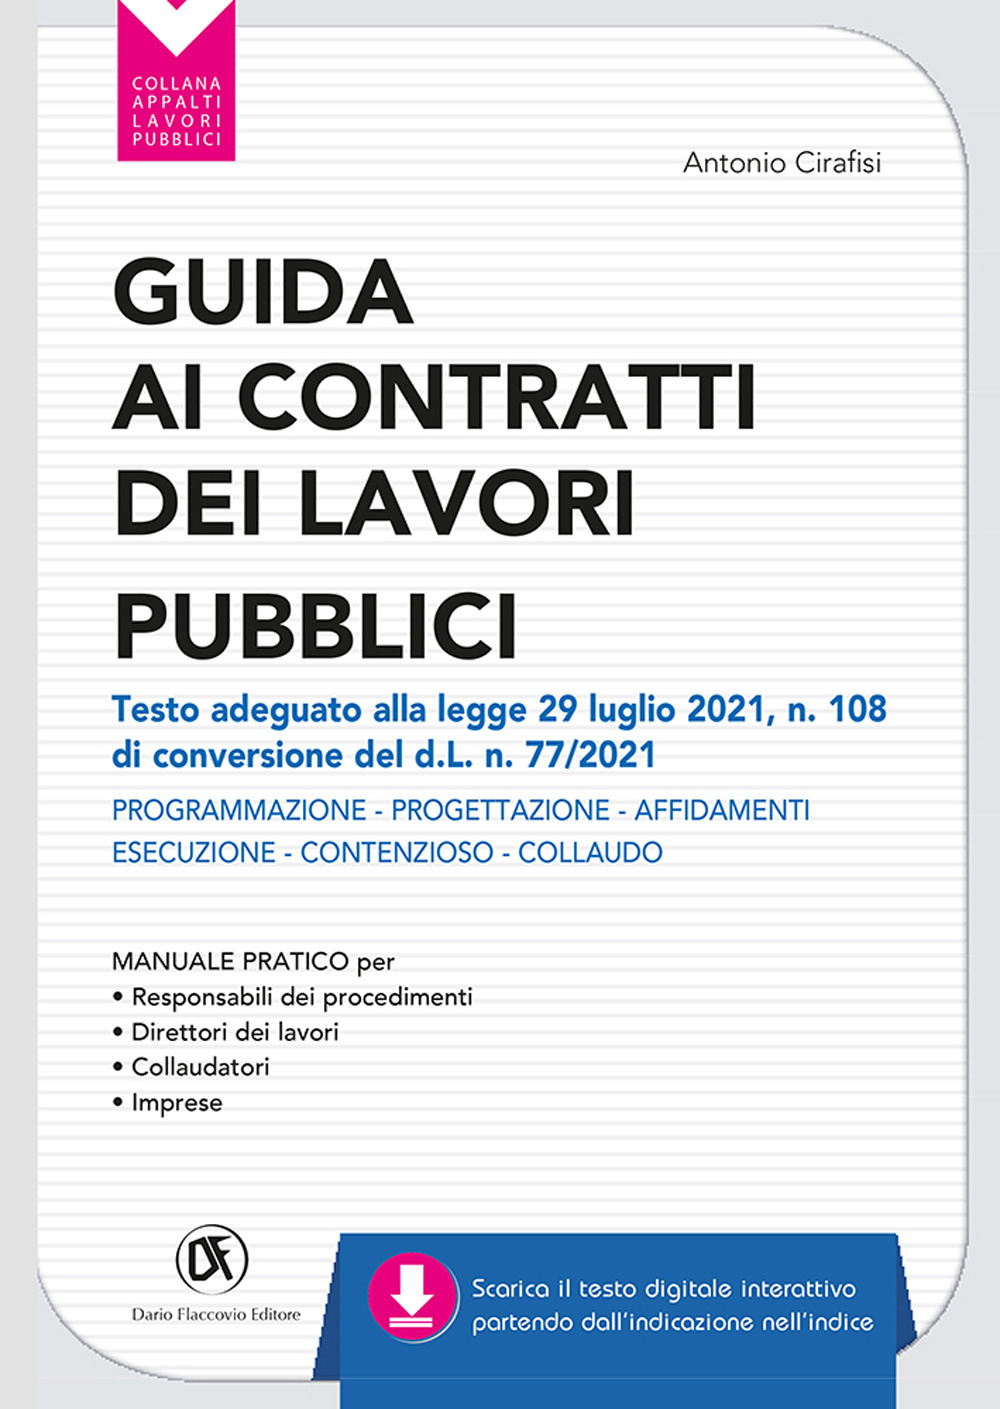 Guida ai contratti dei lavori pubblici. Adeguata al d.l. 31/05/21 n. 77 (d.l. Recovery). Progettazione - Affidamenti - Esecuzione